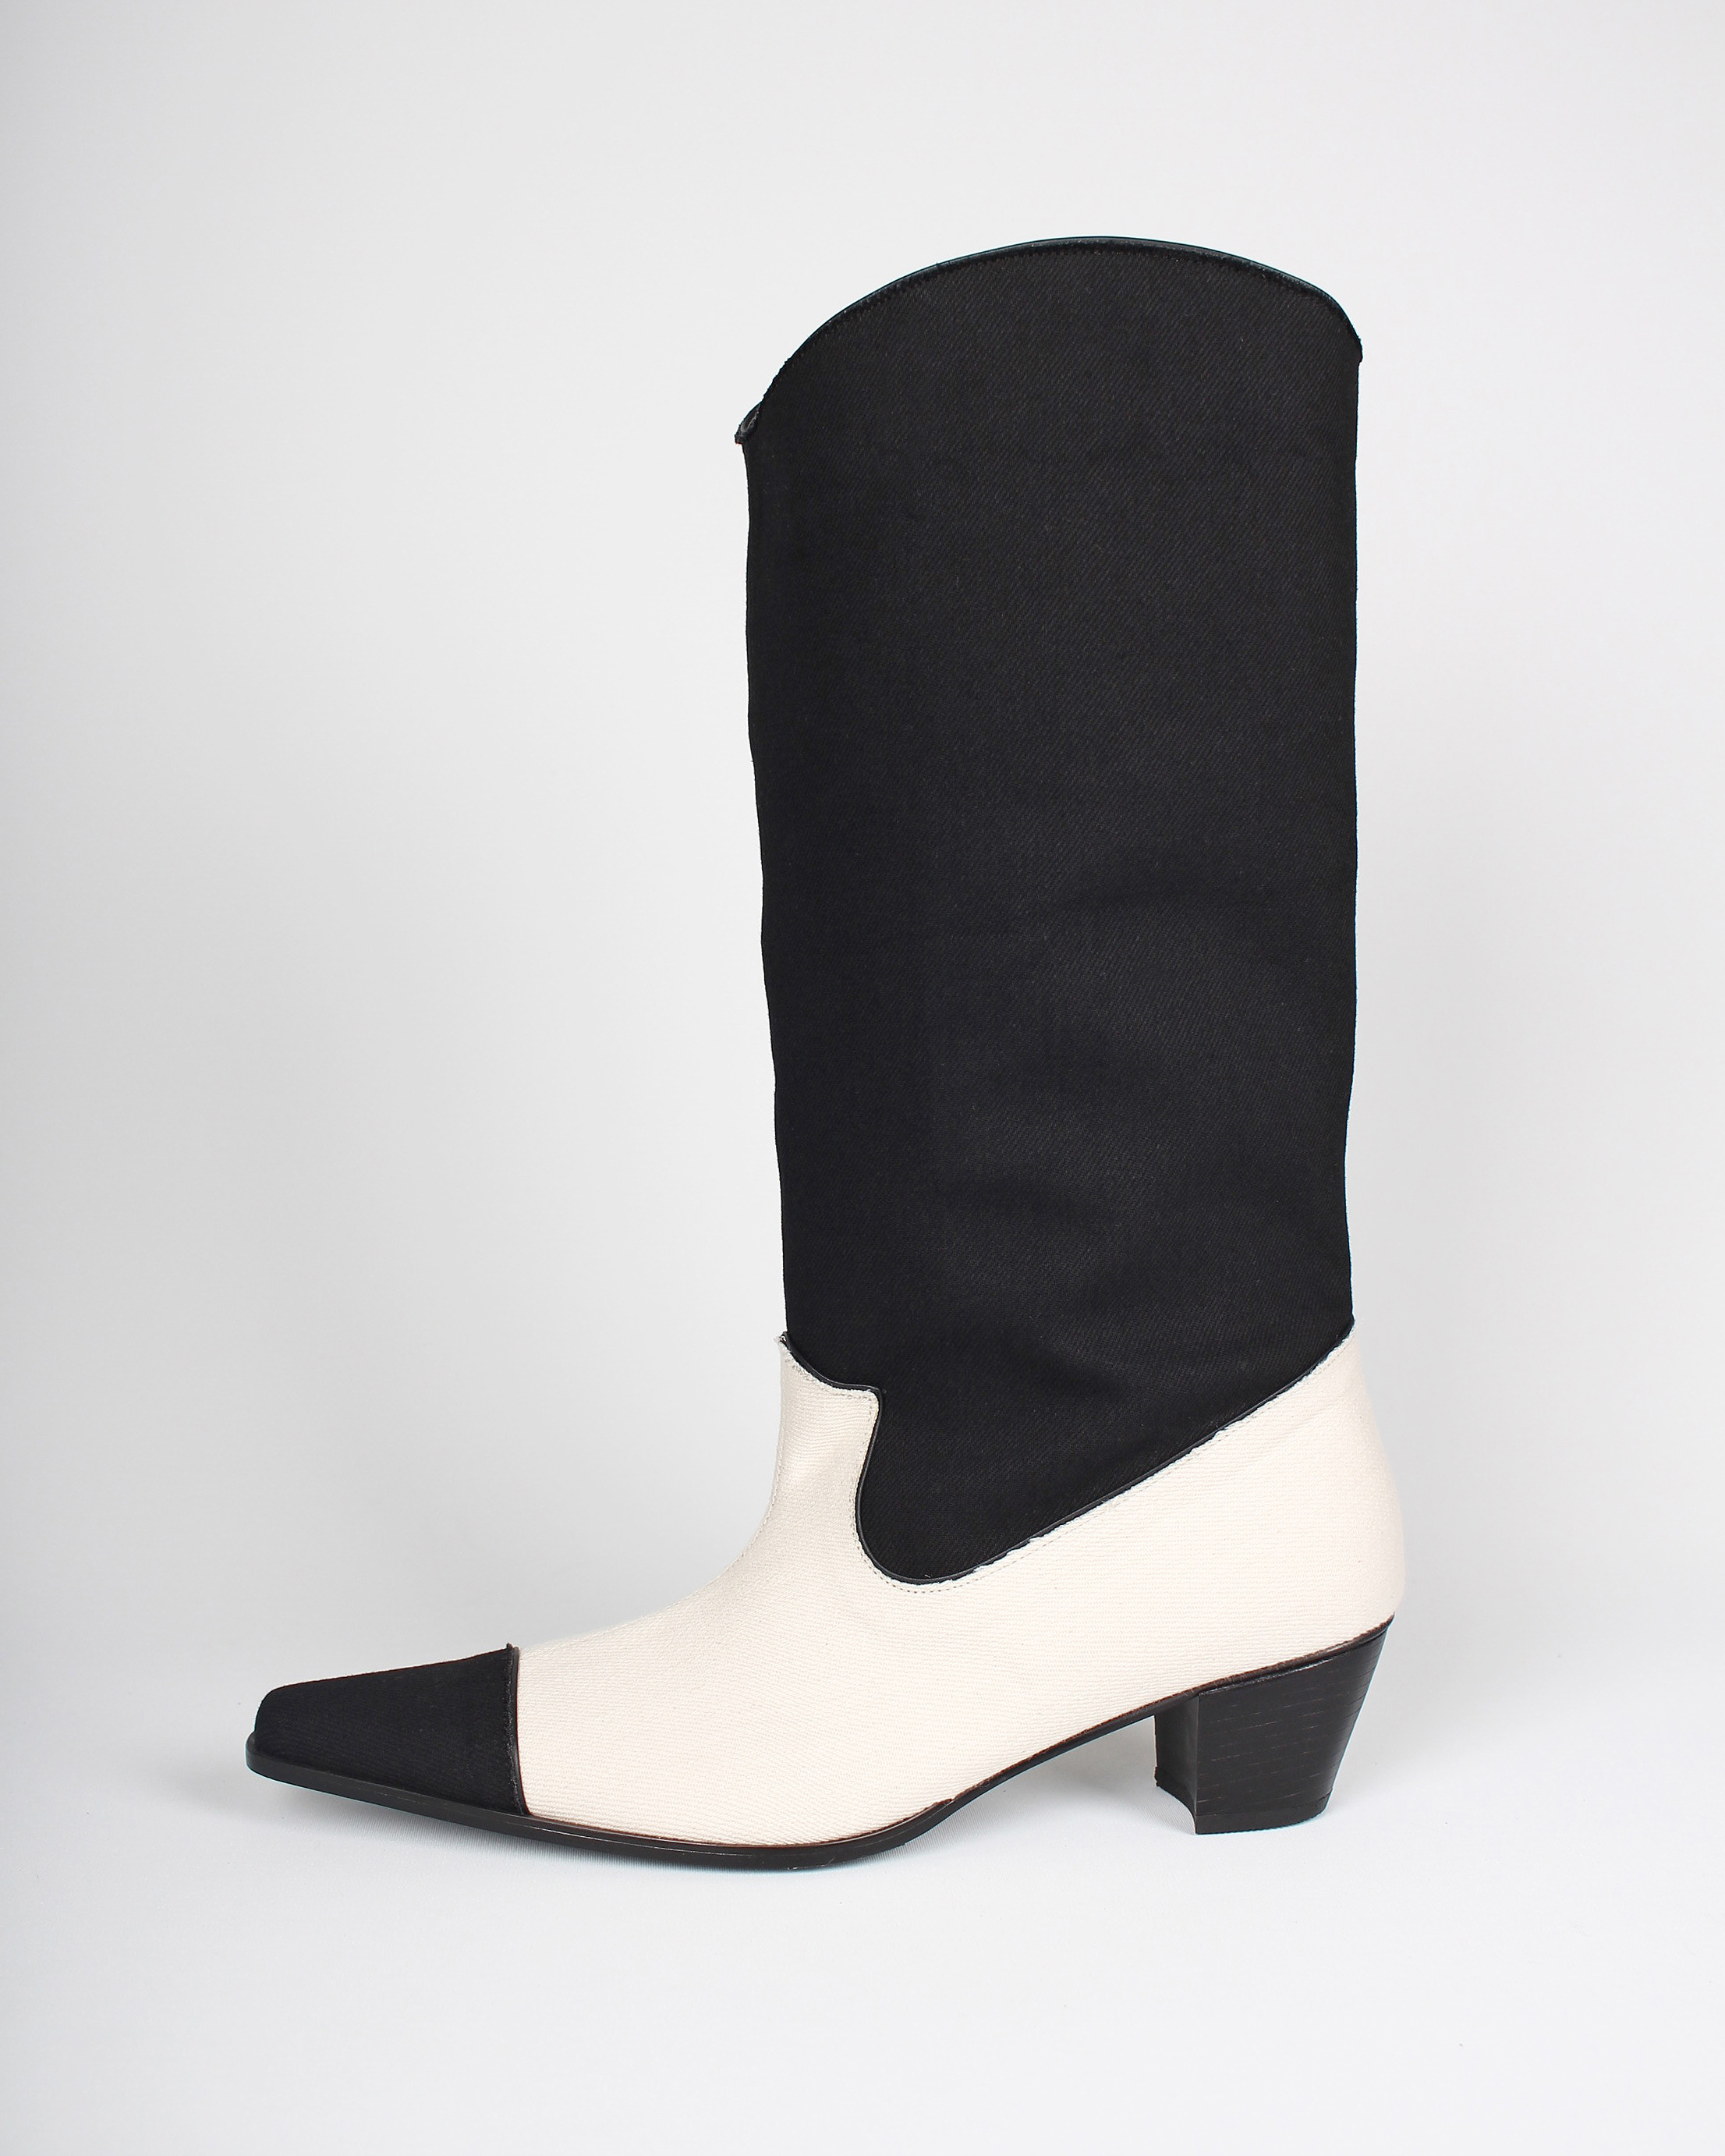 [VT x Fq] Long western boots_black combi